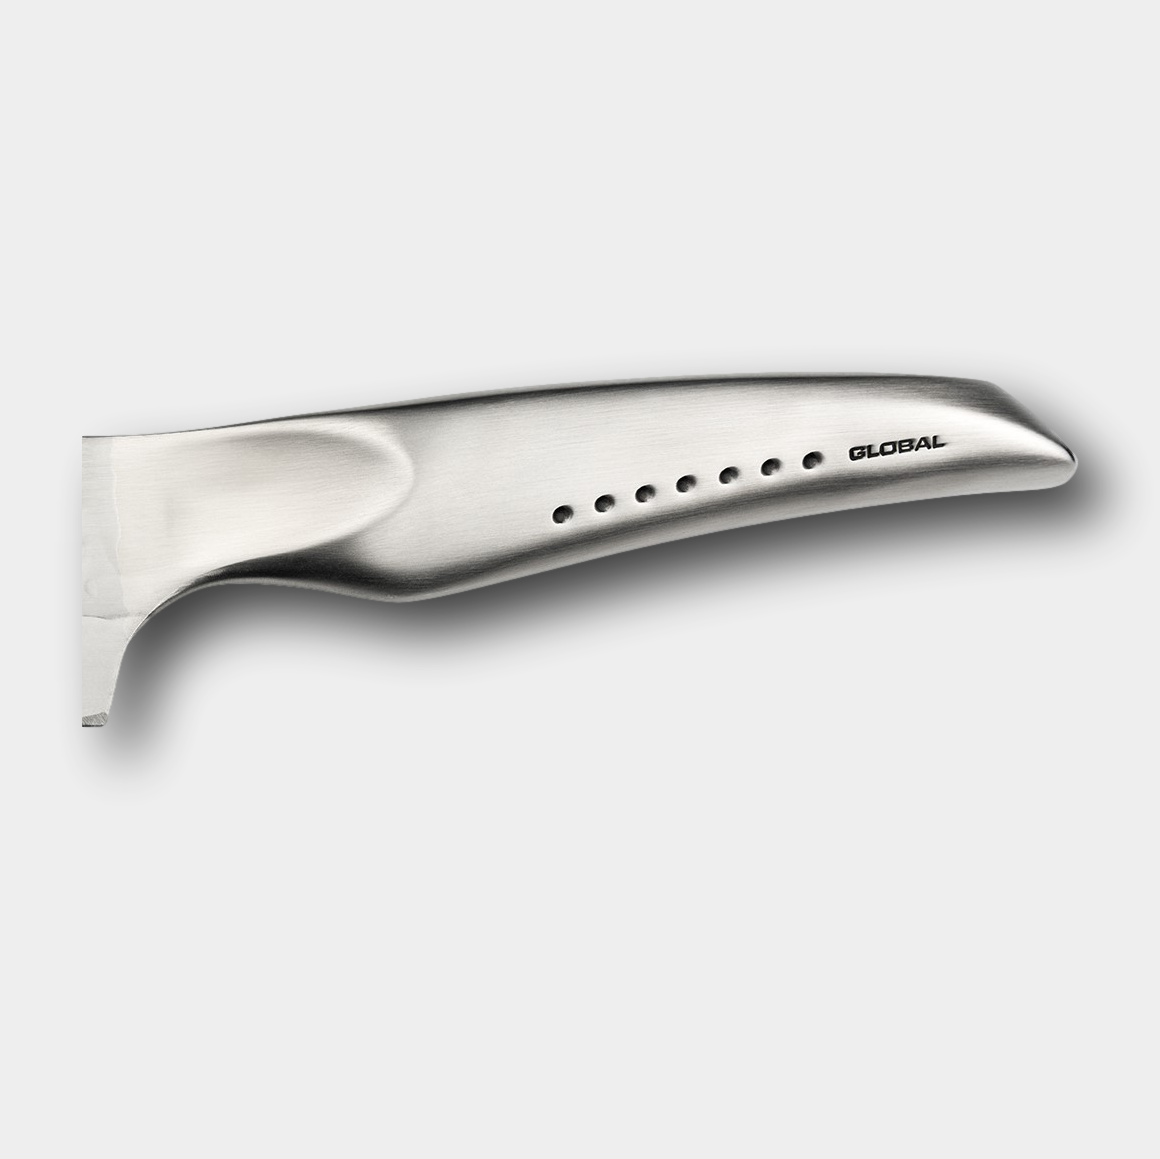 Global Sai Cook's Knife 25cm